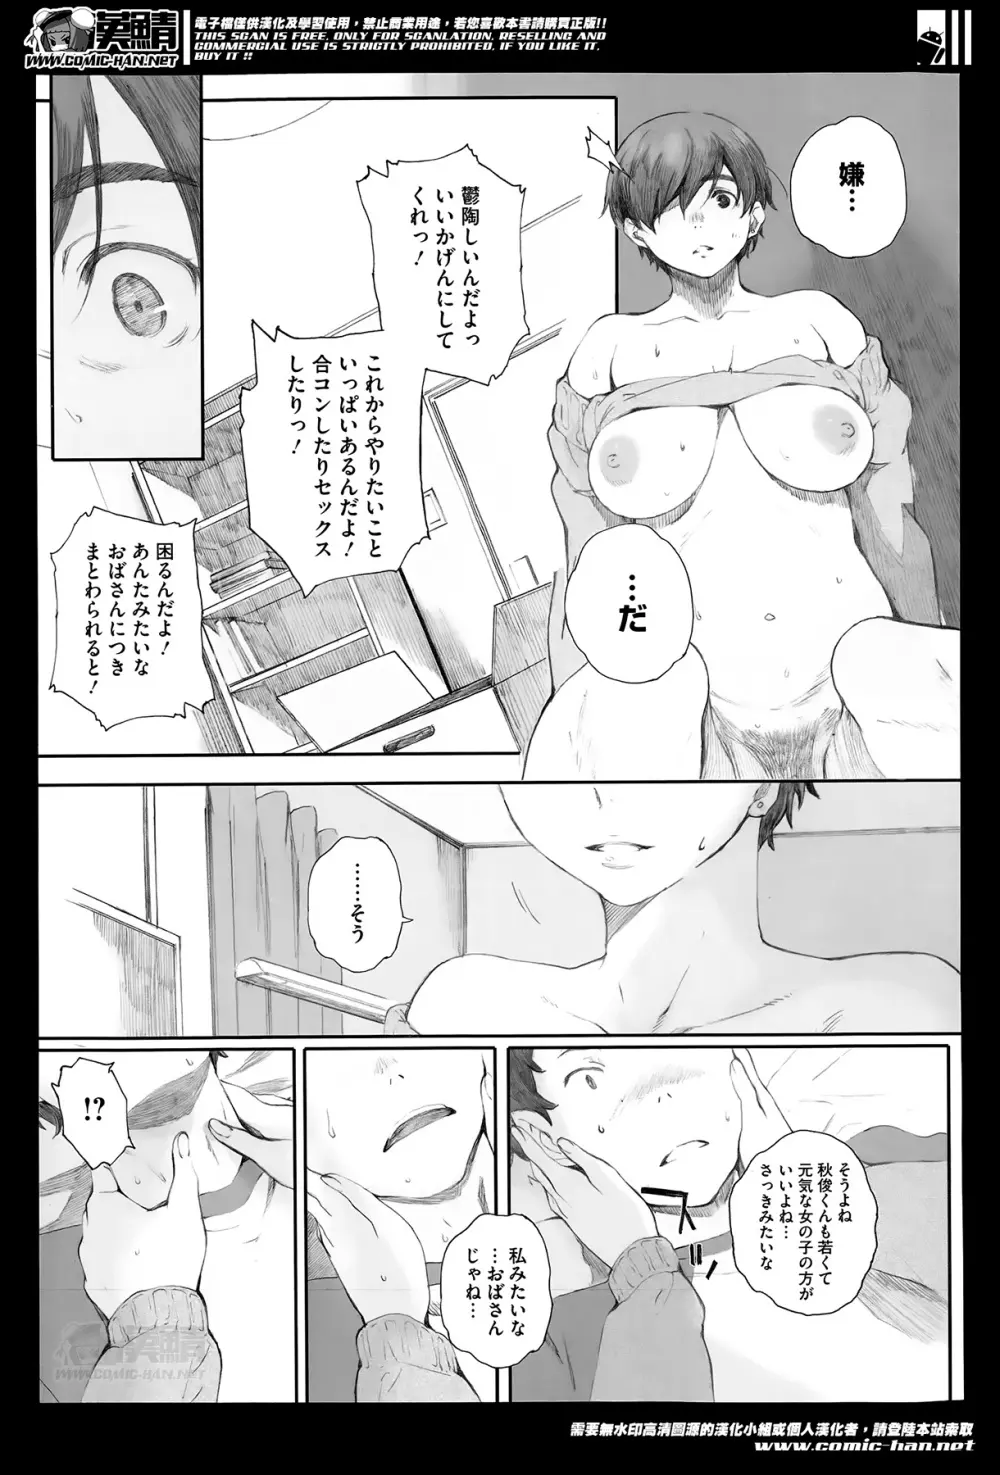 Kamakiri no su Ch.01-02 55ページ